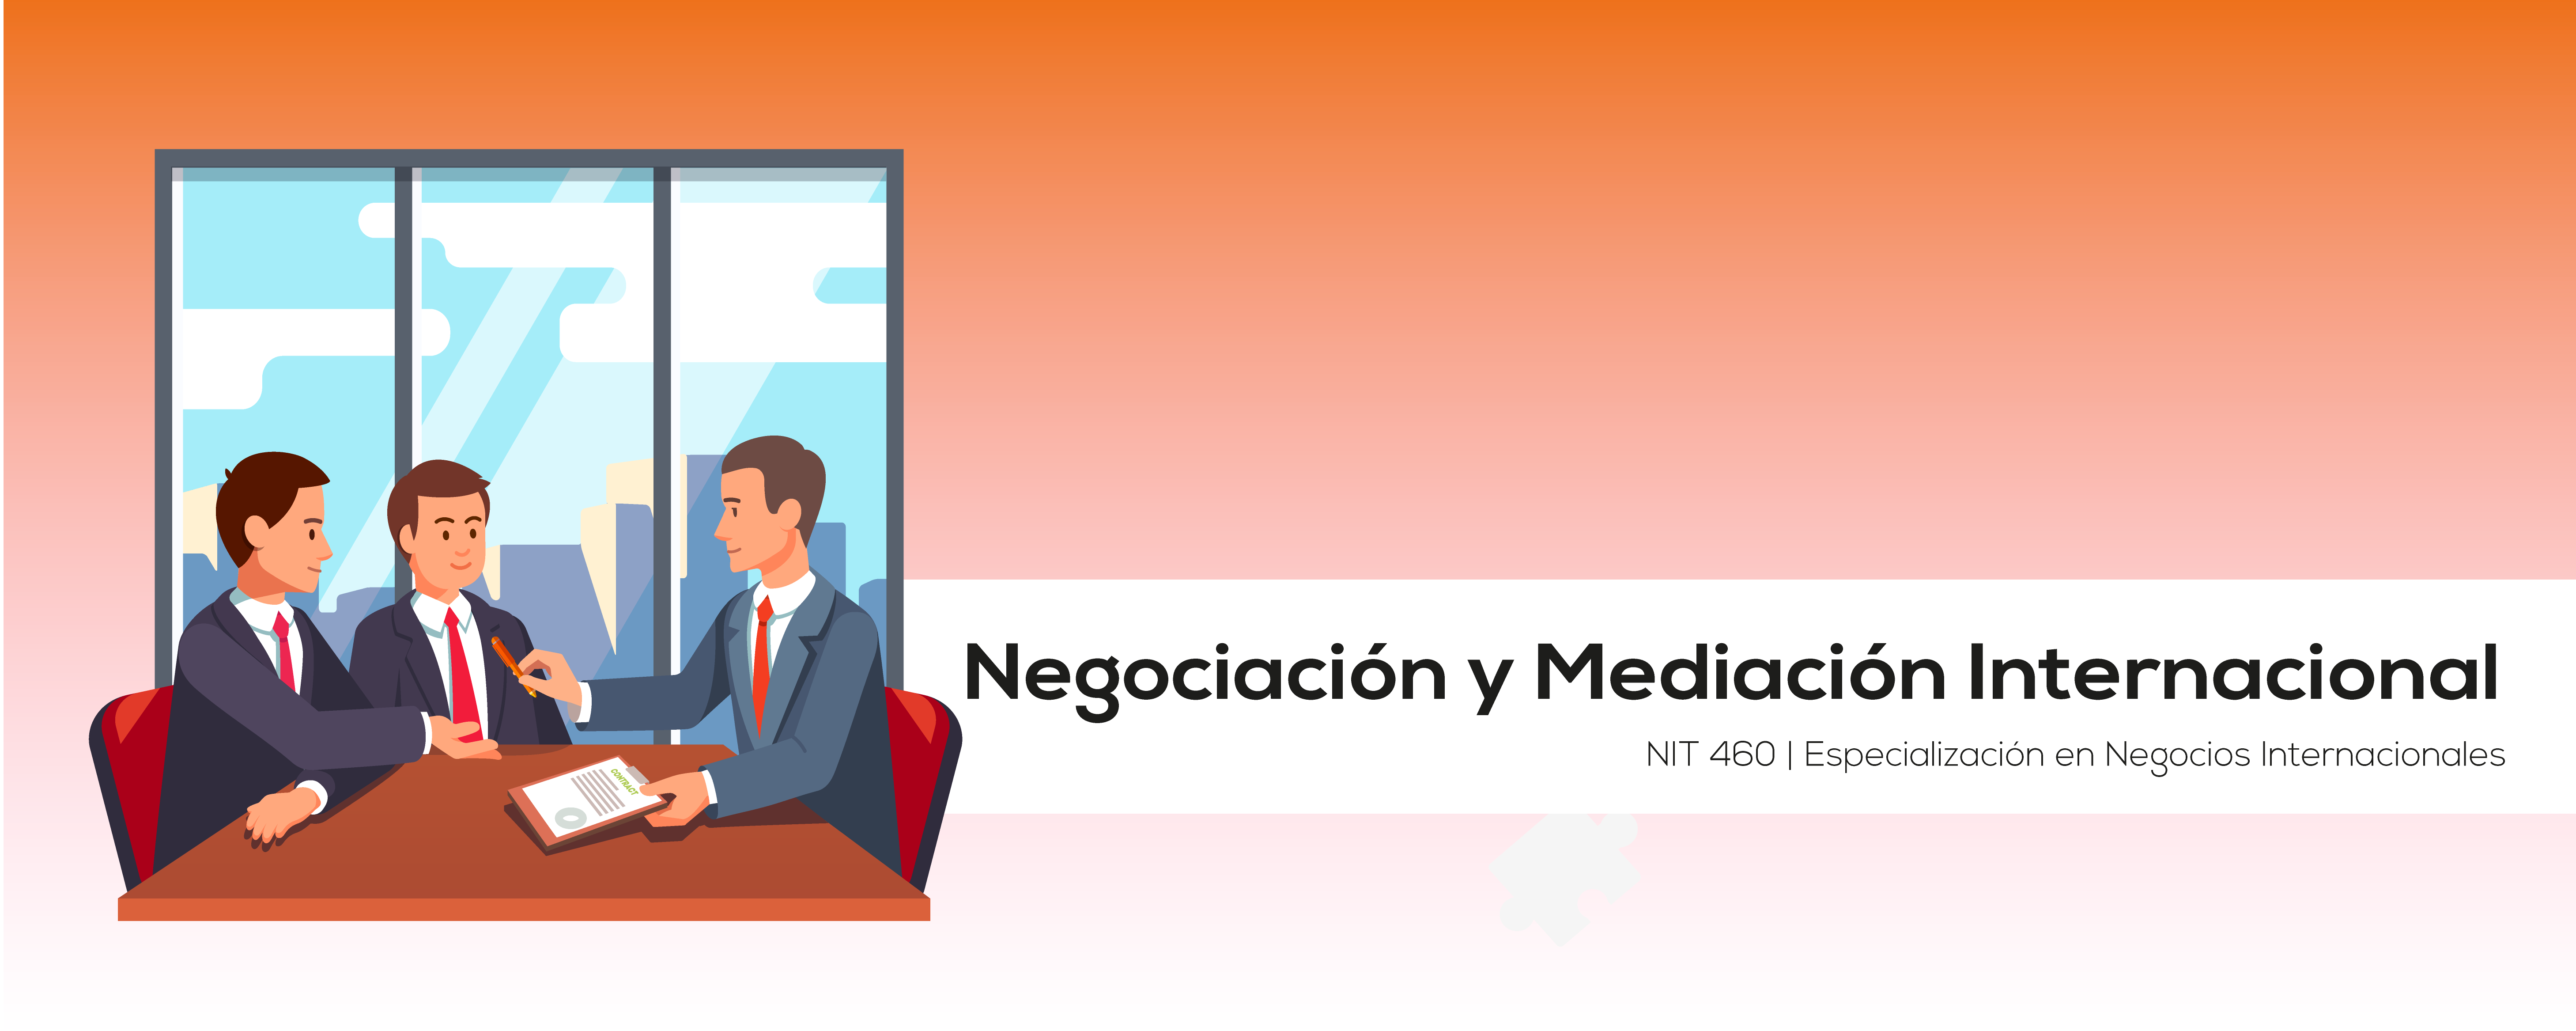 NIT 460| 22FA-5B Negociación y Mediación Internacional 